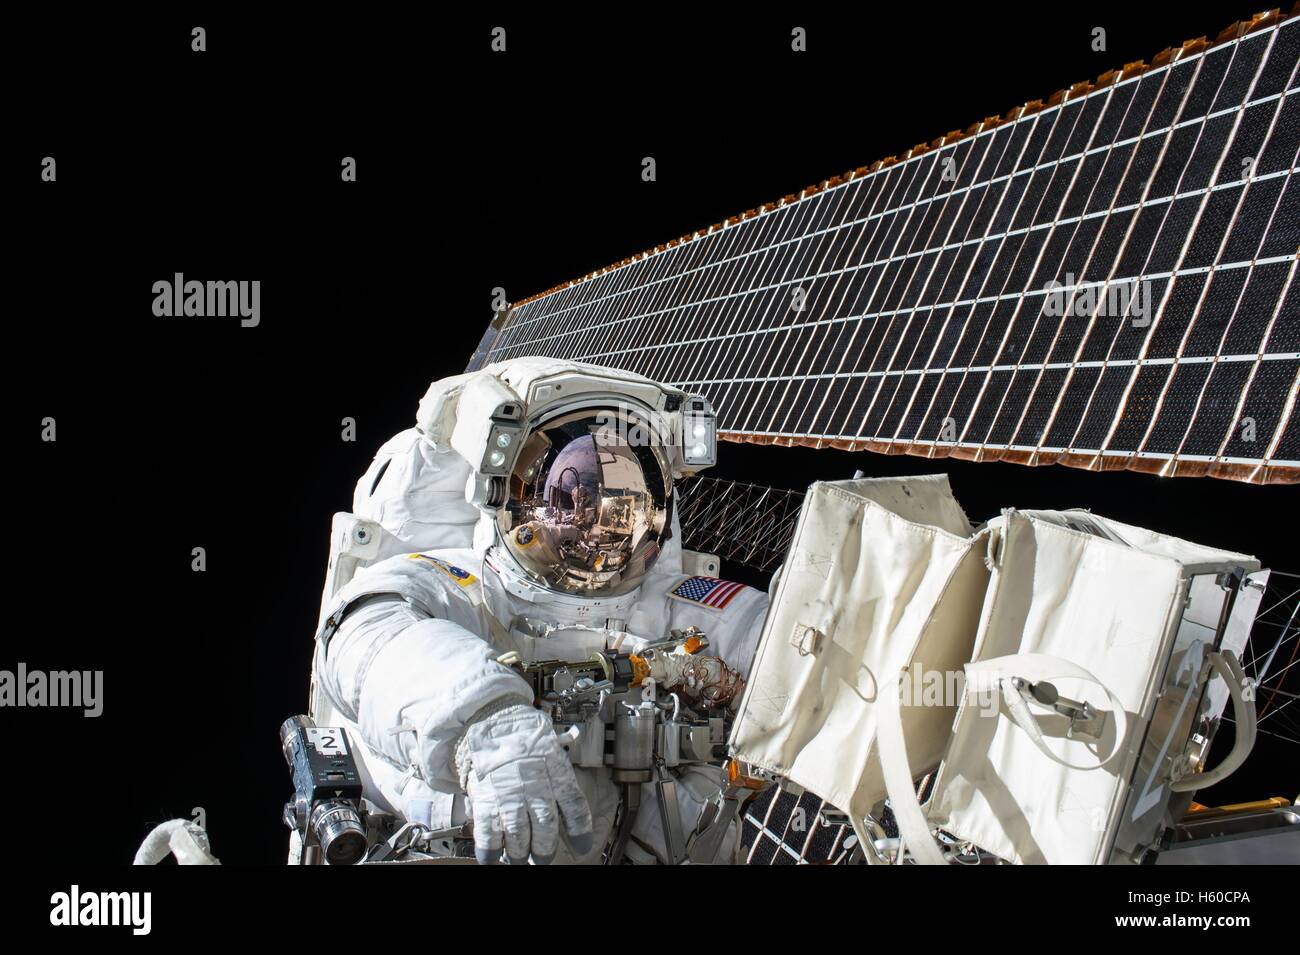 La NASA Stazione Spaziale Internazionale Expedition 45 astronauta americano Scott Kelly fa manutenzione sull'esterno della ISS durante un'attività extravehicular spacewalk Novembre 6, 2015 mentre in orbita intorno alla terra. Foto Stock